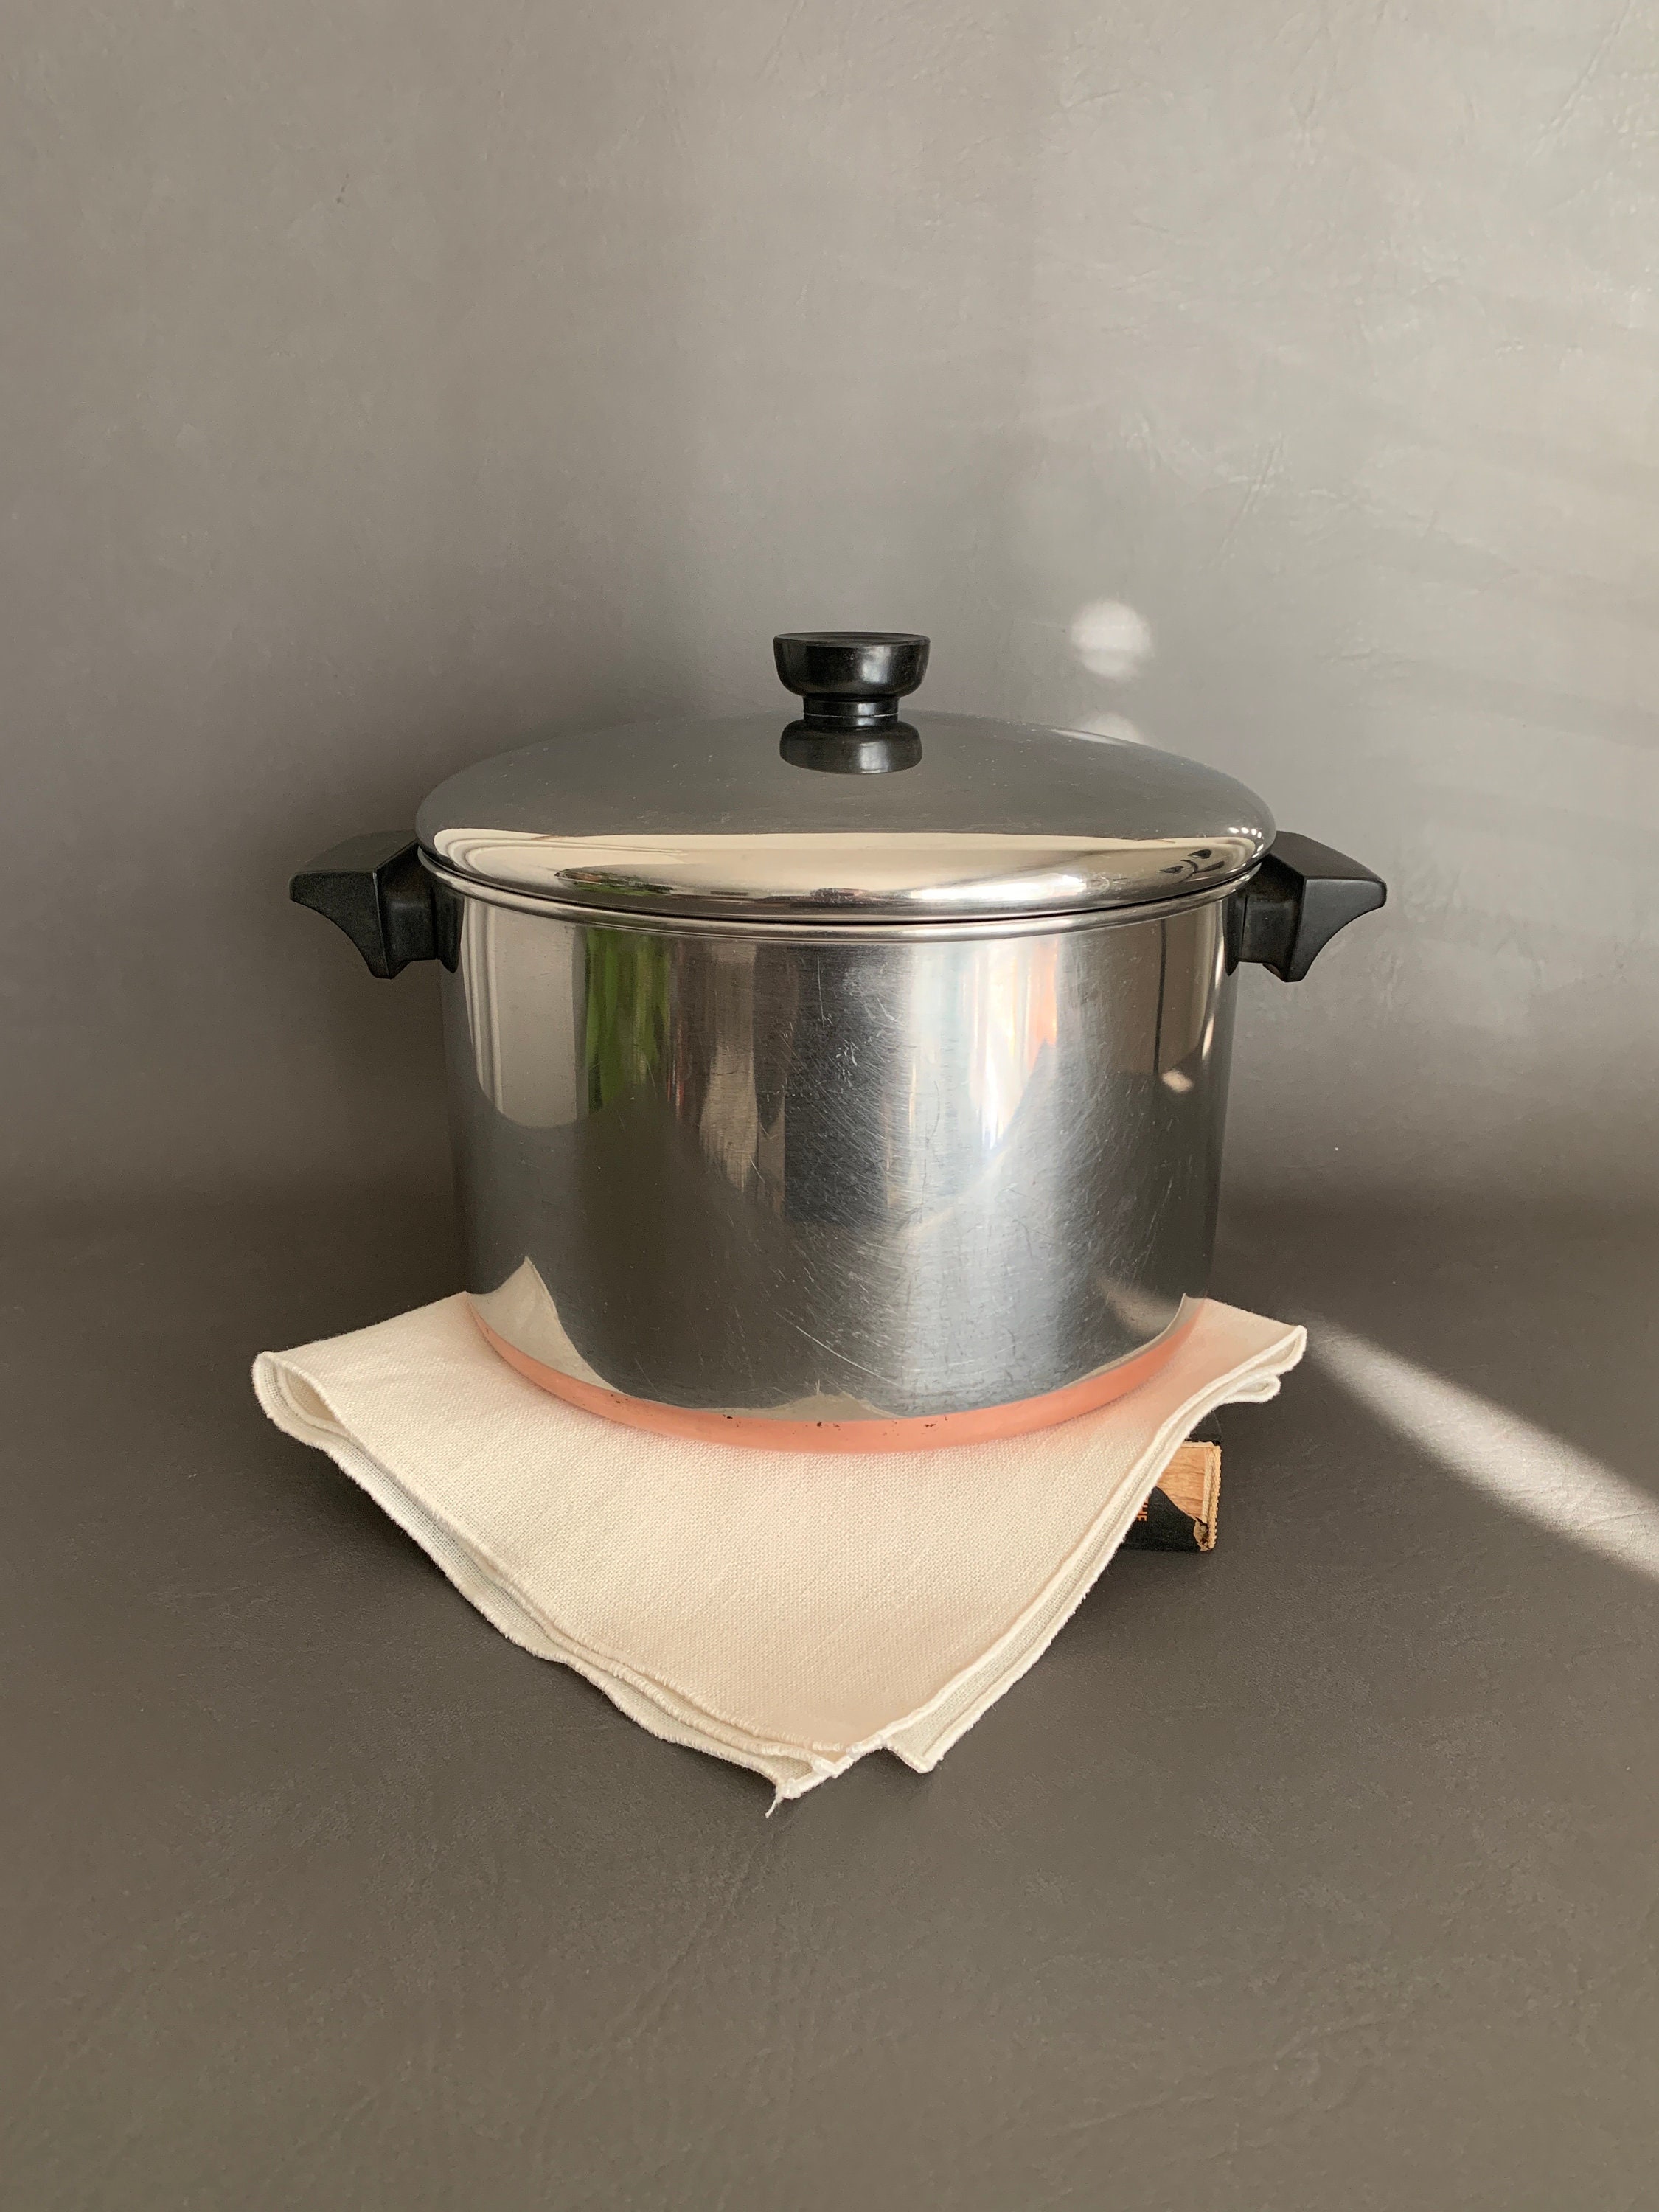 Pre 1968 1801 Revere Ware Copper Bottom Dutch Oven w/Metal Handles